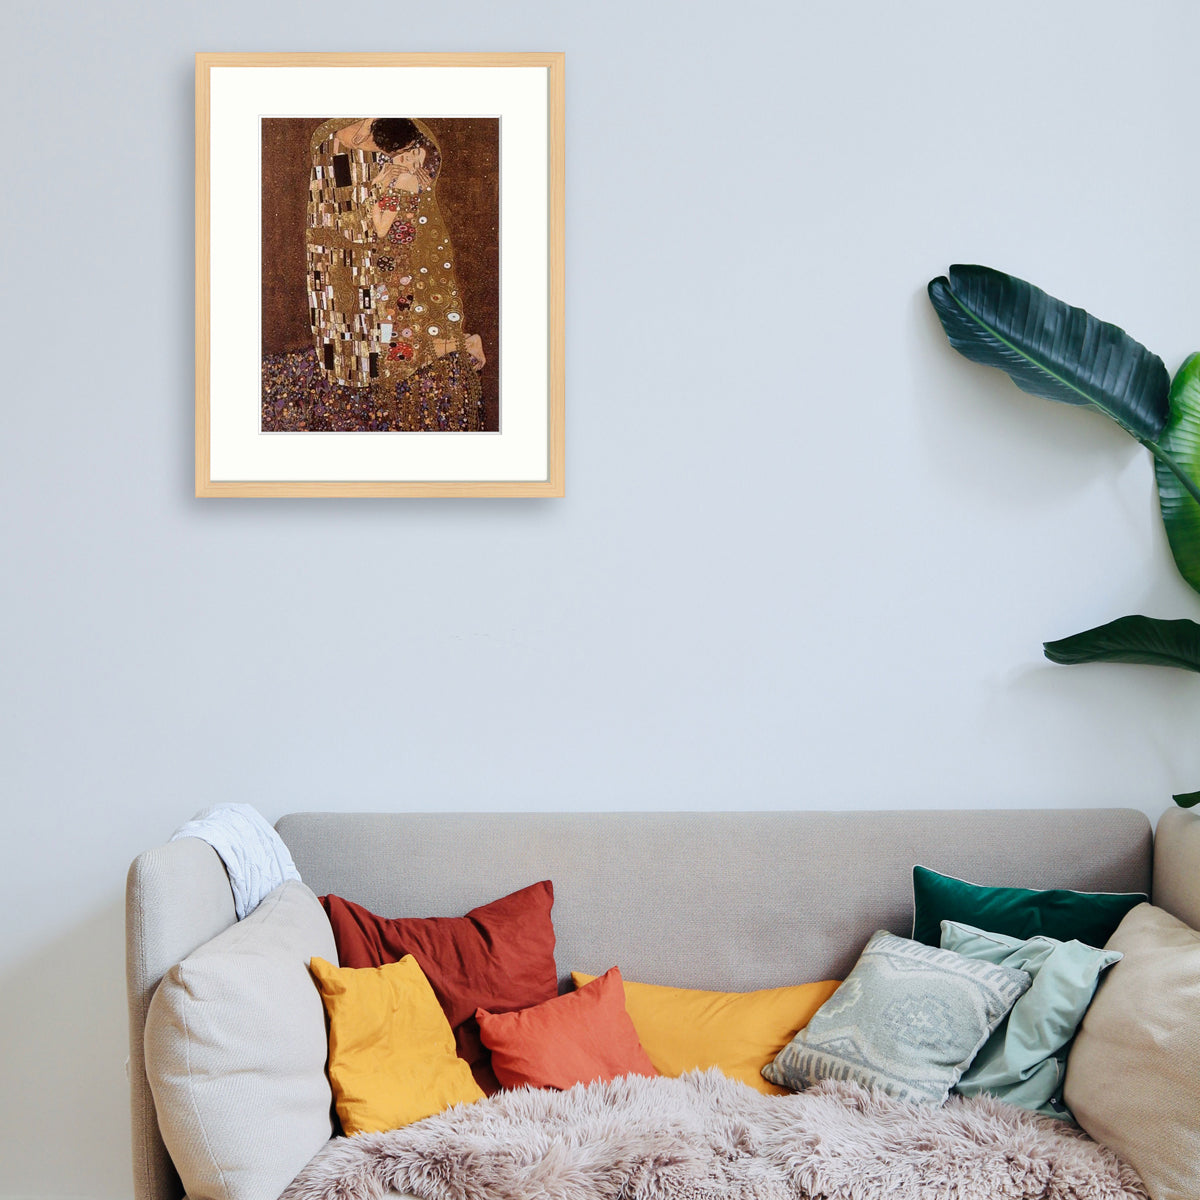 Klimt - Le baiser Le Cadre Décoration intérieure Tableaux cadre bois affiche poster oeuvre d'art rapport qualité prix pas cher peintre célèbre